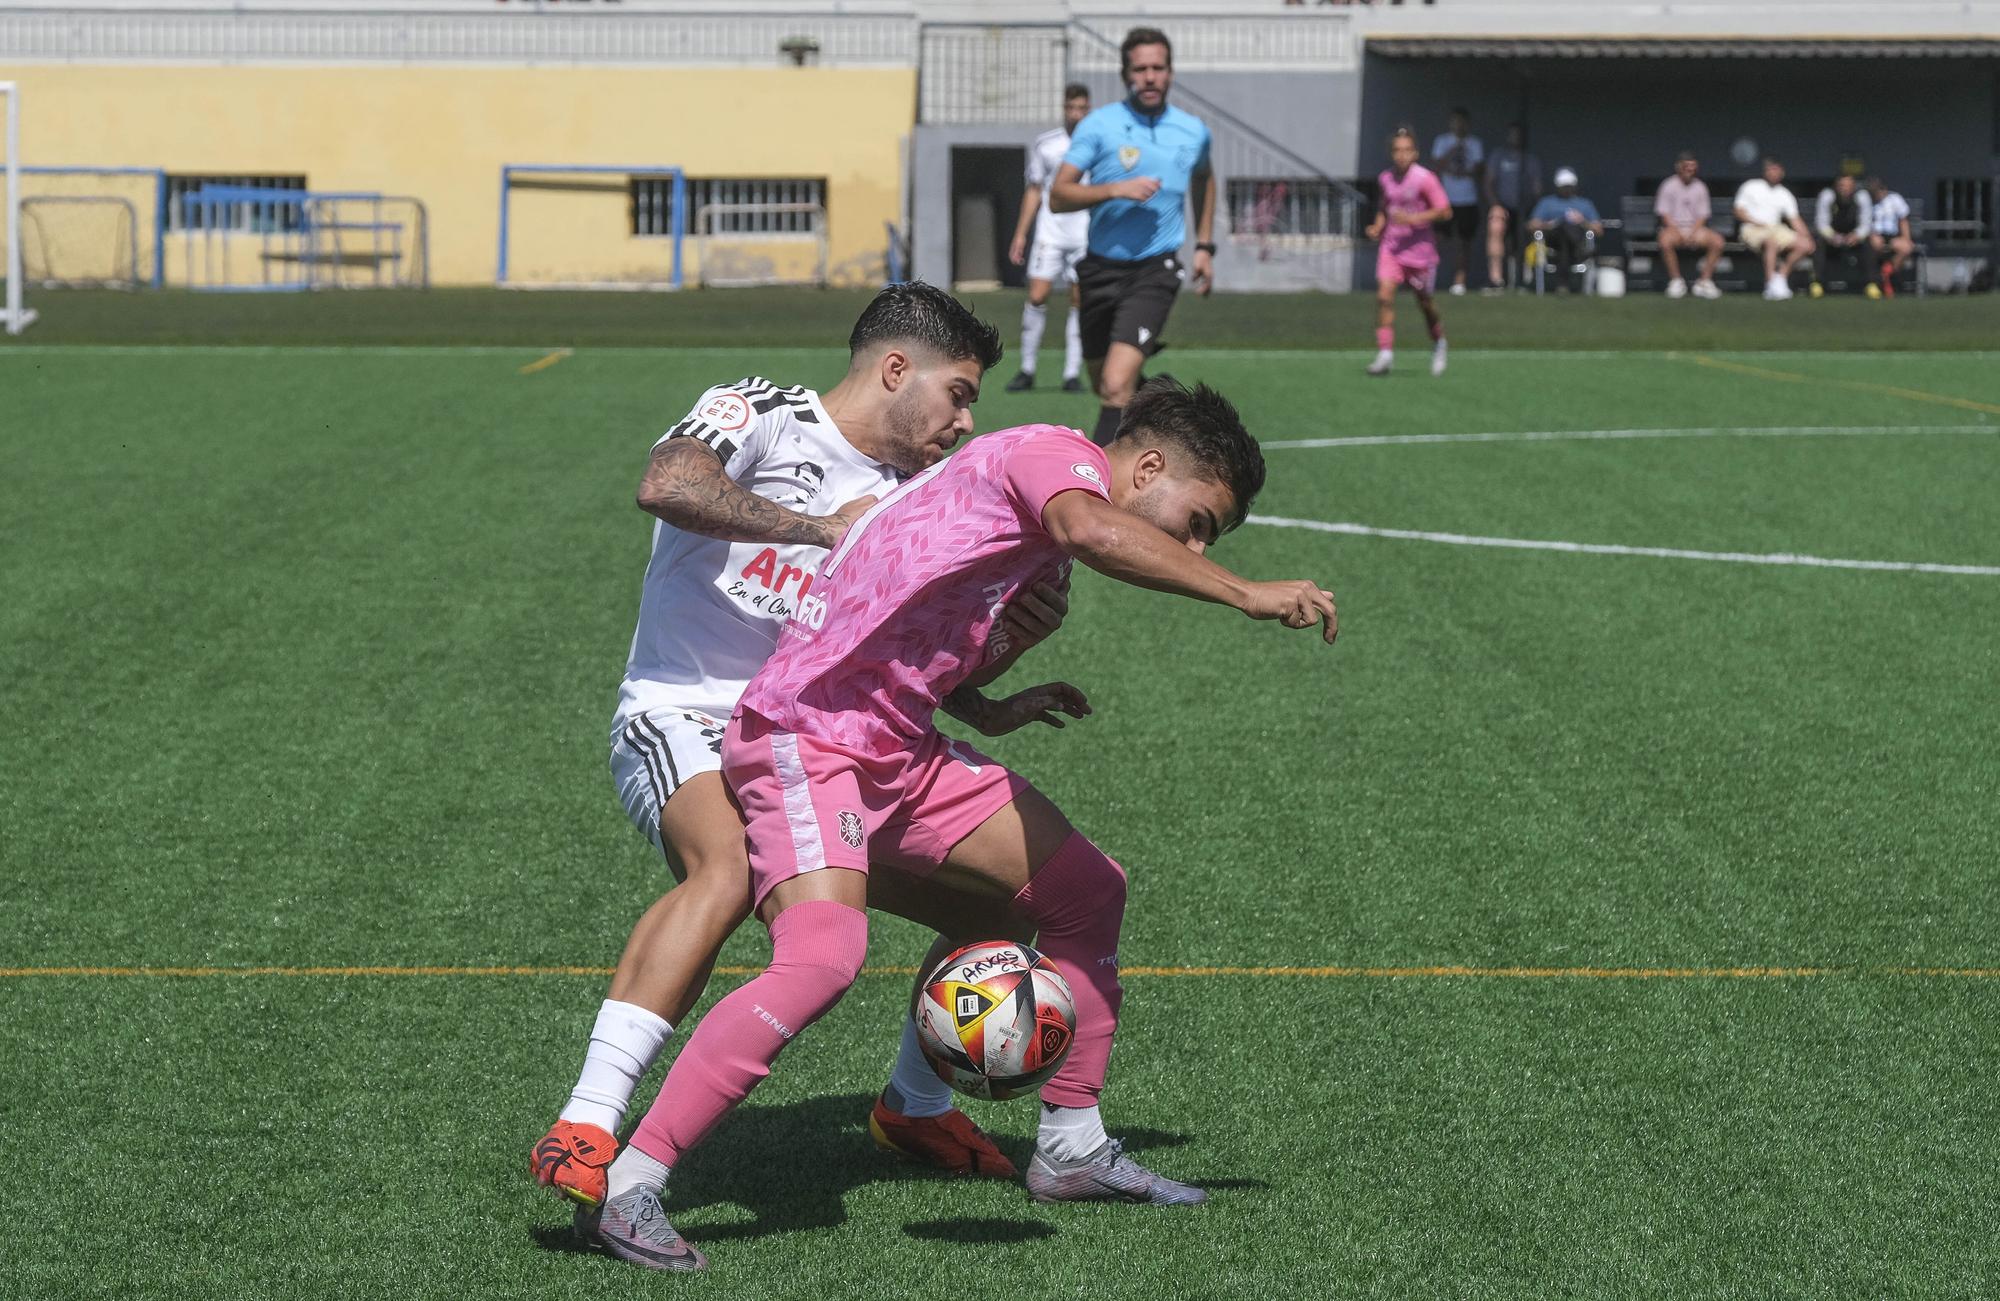 Imágenes del encuentro disputado por el Arucas y el CD Tenerife B, de Tercera División.